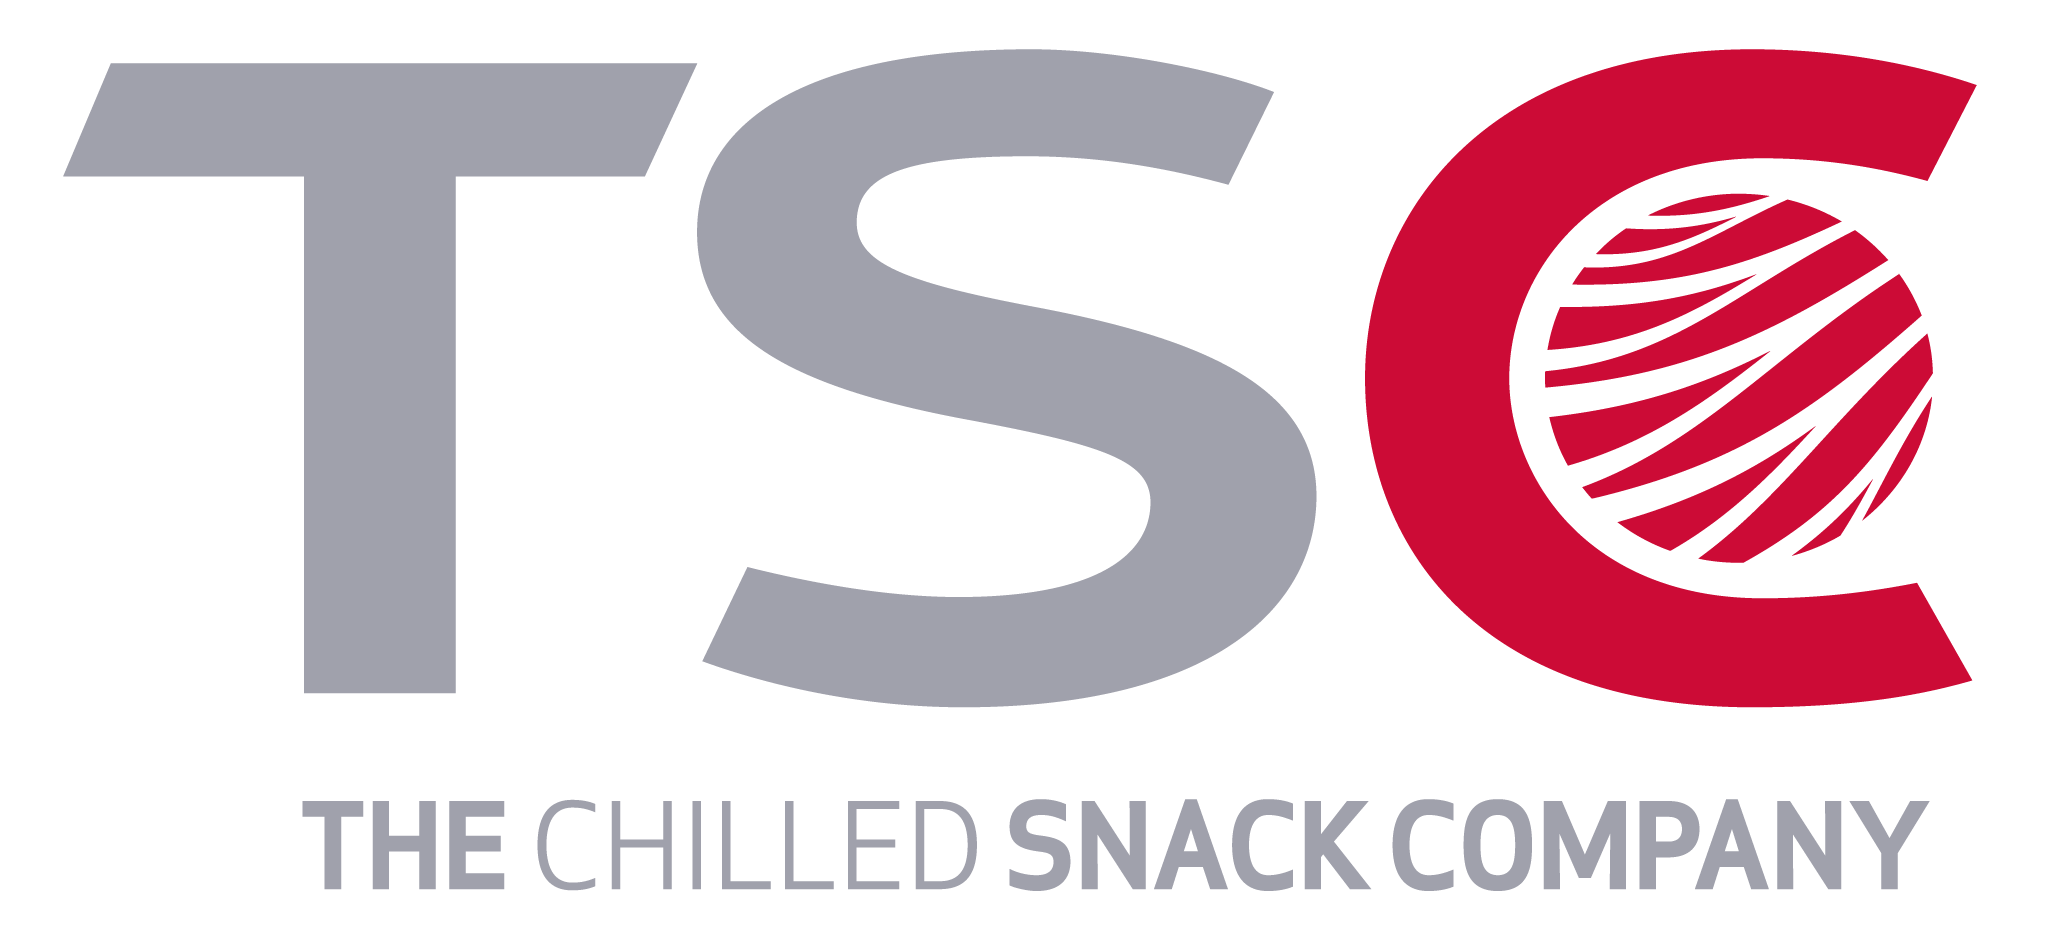 TSC Logo - tsc-logo-NEU - TSC - The Chilled Snack Company